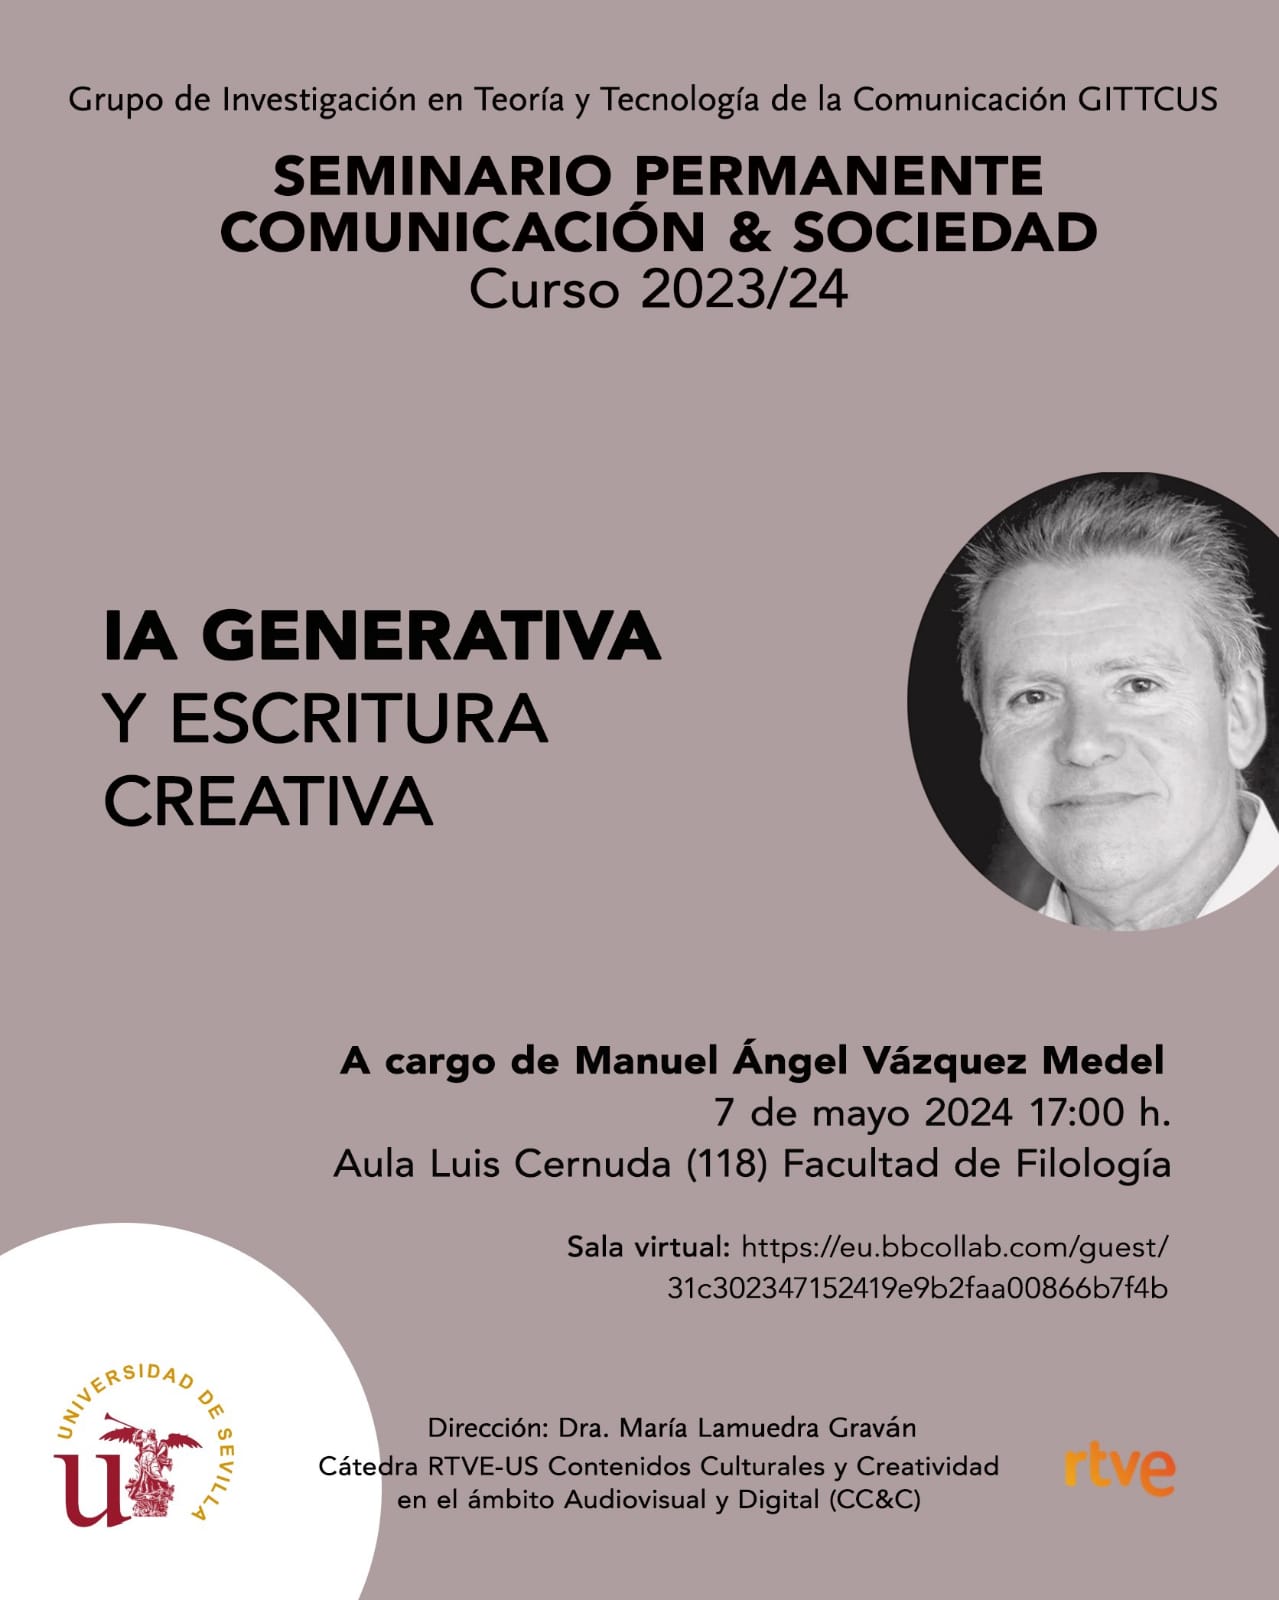 IA generativa y escritura creativa. Manuel Ángel Vázquez Medel